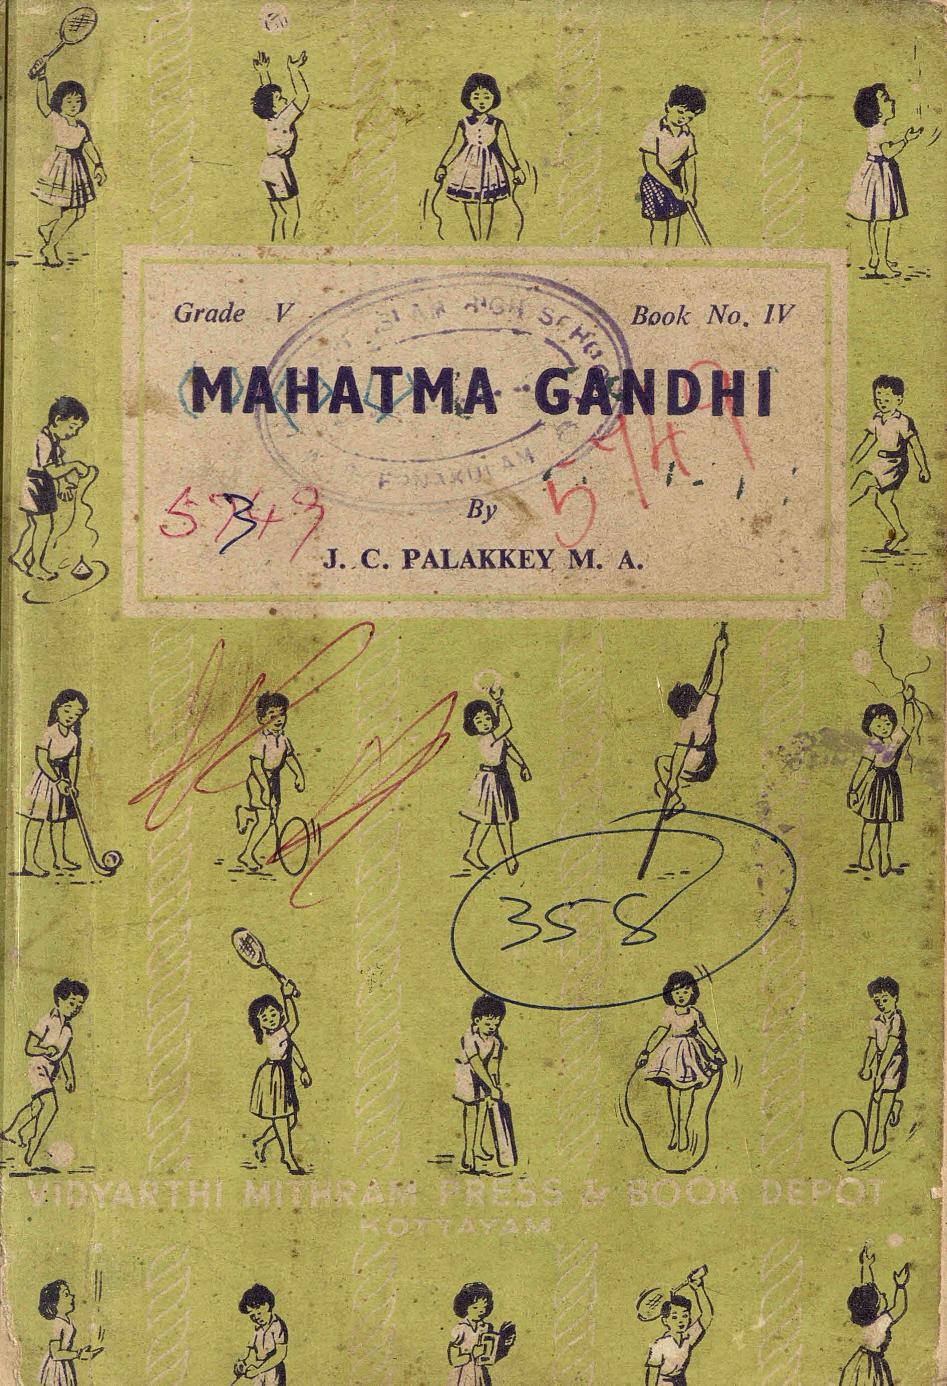  1965 - Mahatma Gandhi - J. C. Palakkey